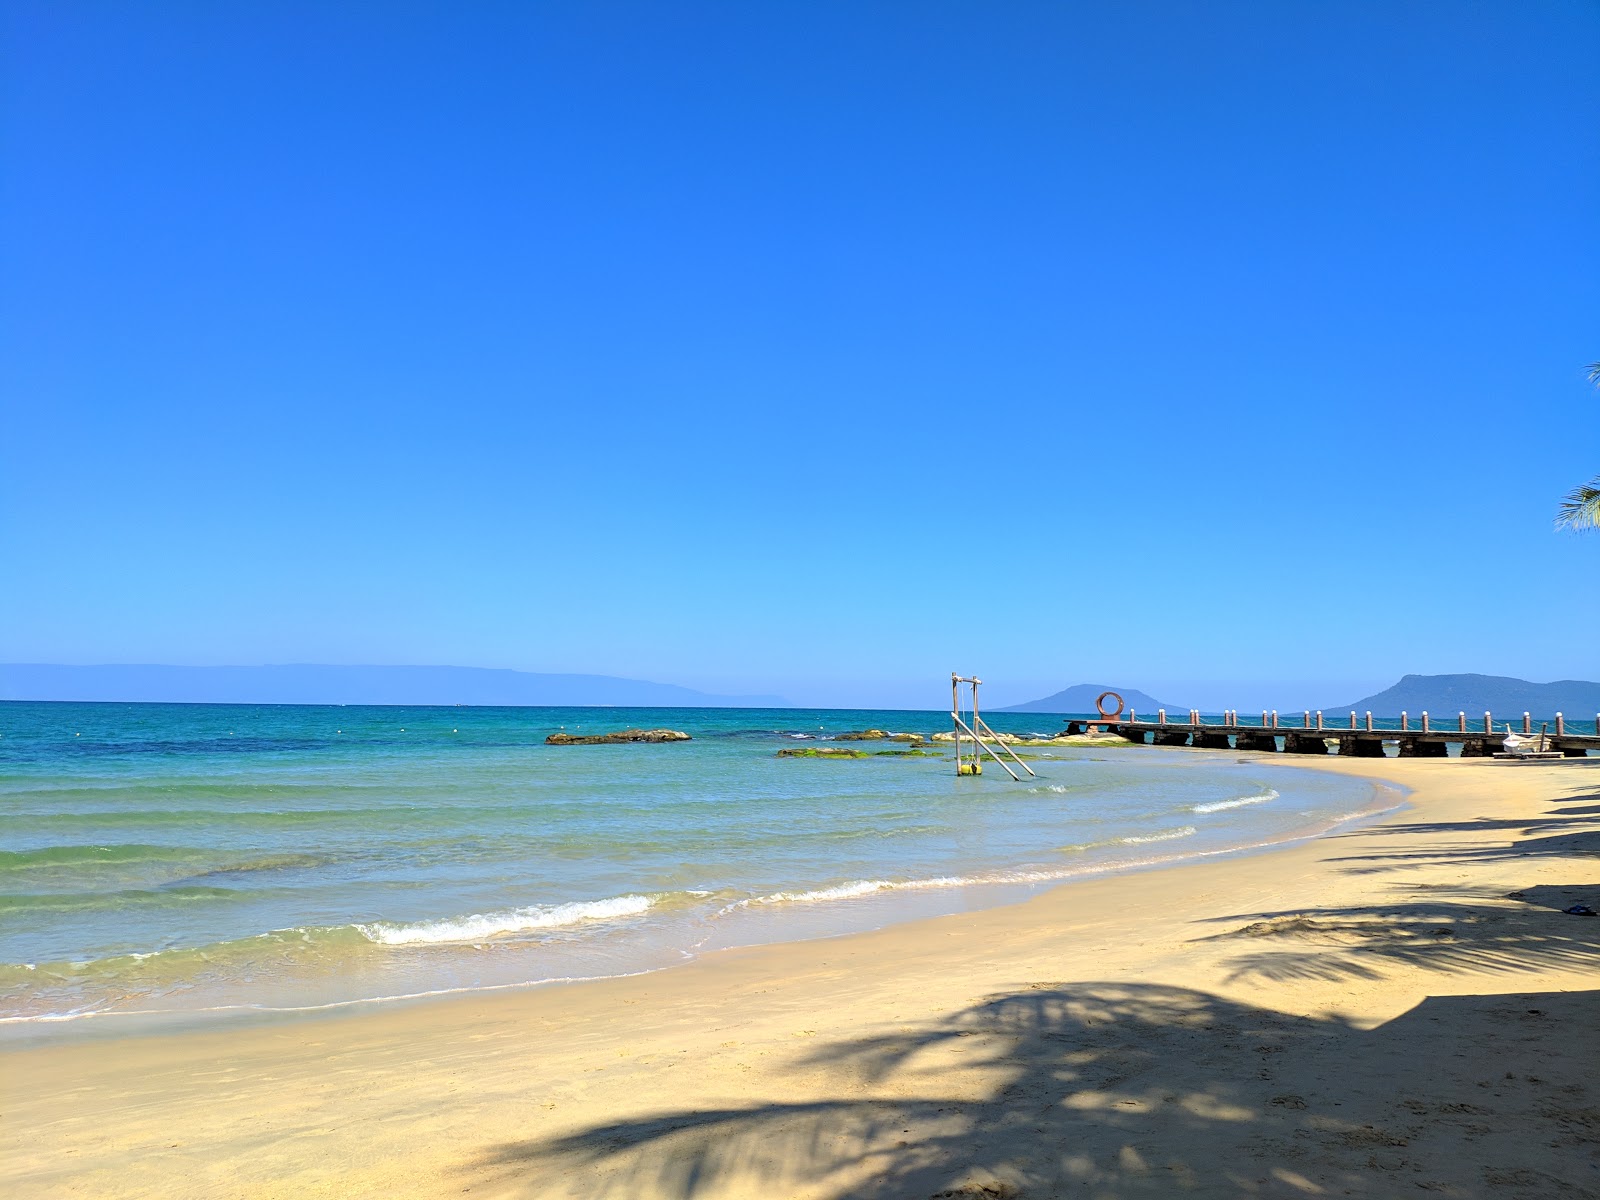 Fotografie cu Gold Coast Resort cu o suprafață de nisip strălucitor